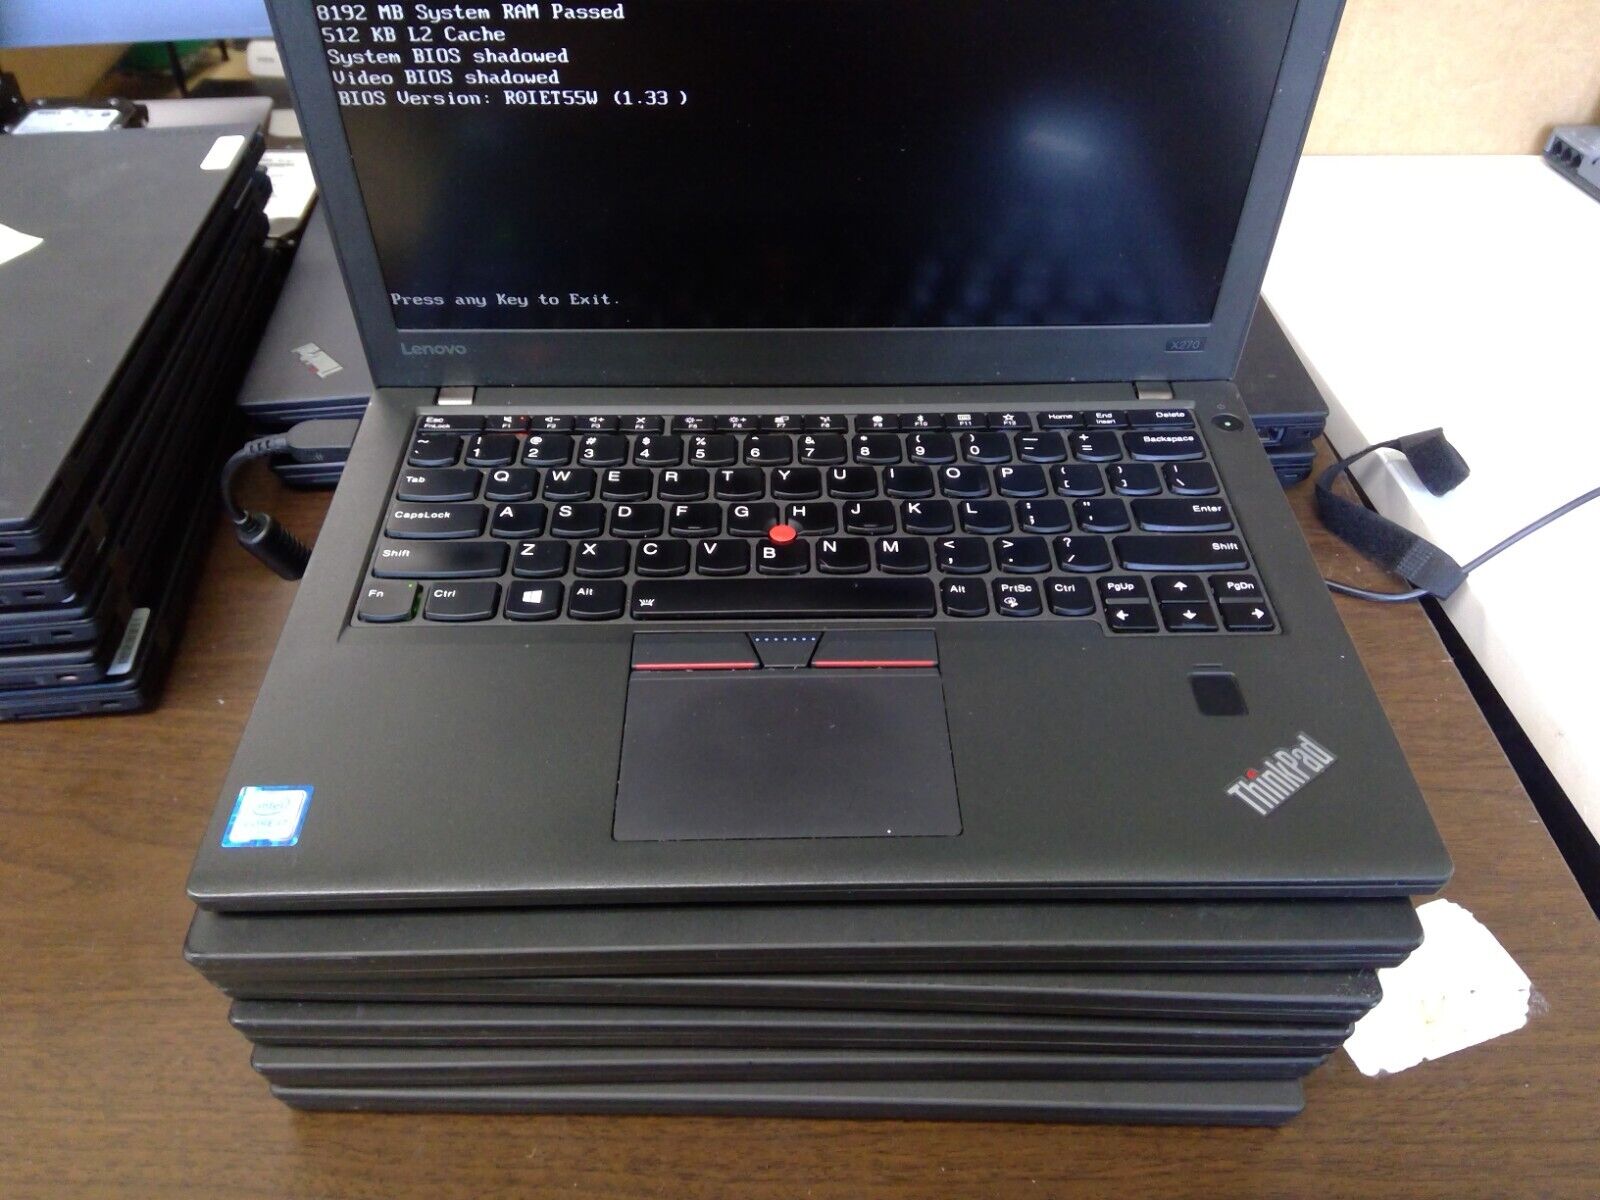 Lot of 6 Lenovo ThinkPad x270 Laptops i5-6300, 8GB RAM, No HDD/OS Bad Battery